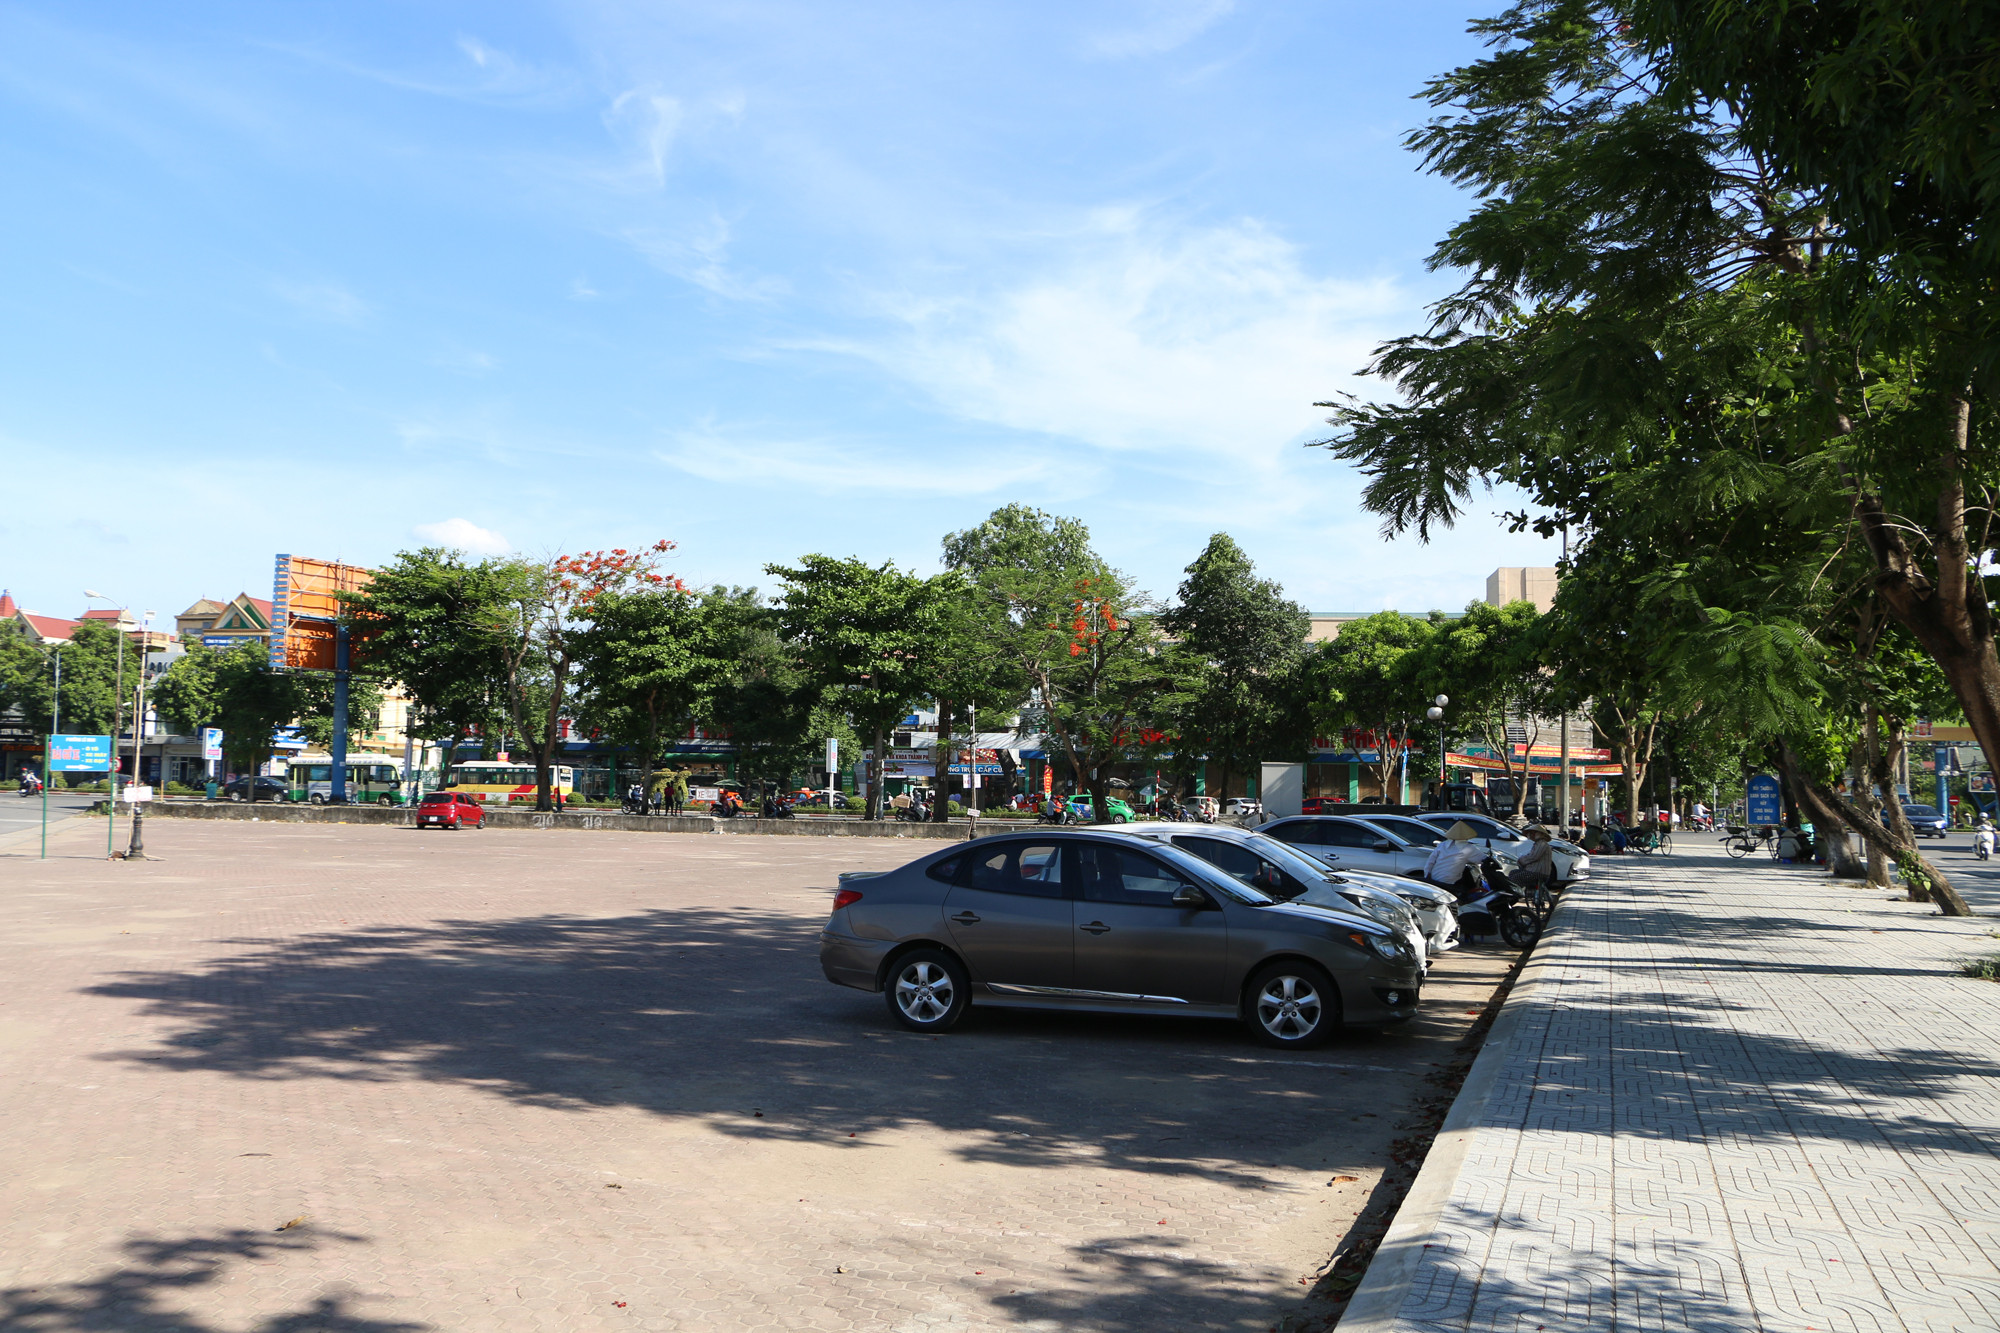 Bãi đậu xe trước Cổng Công viên Trung tâm thuộc địa bàn phường Lê Mao được quy hoạch, dịch vụ trông giữ xe qua đêm tại TP Vinh. Ảnh: Nguyễn Hải